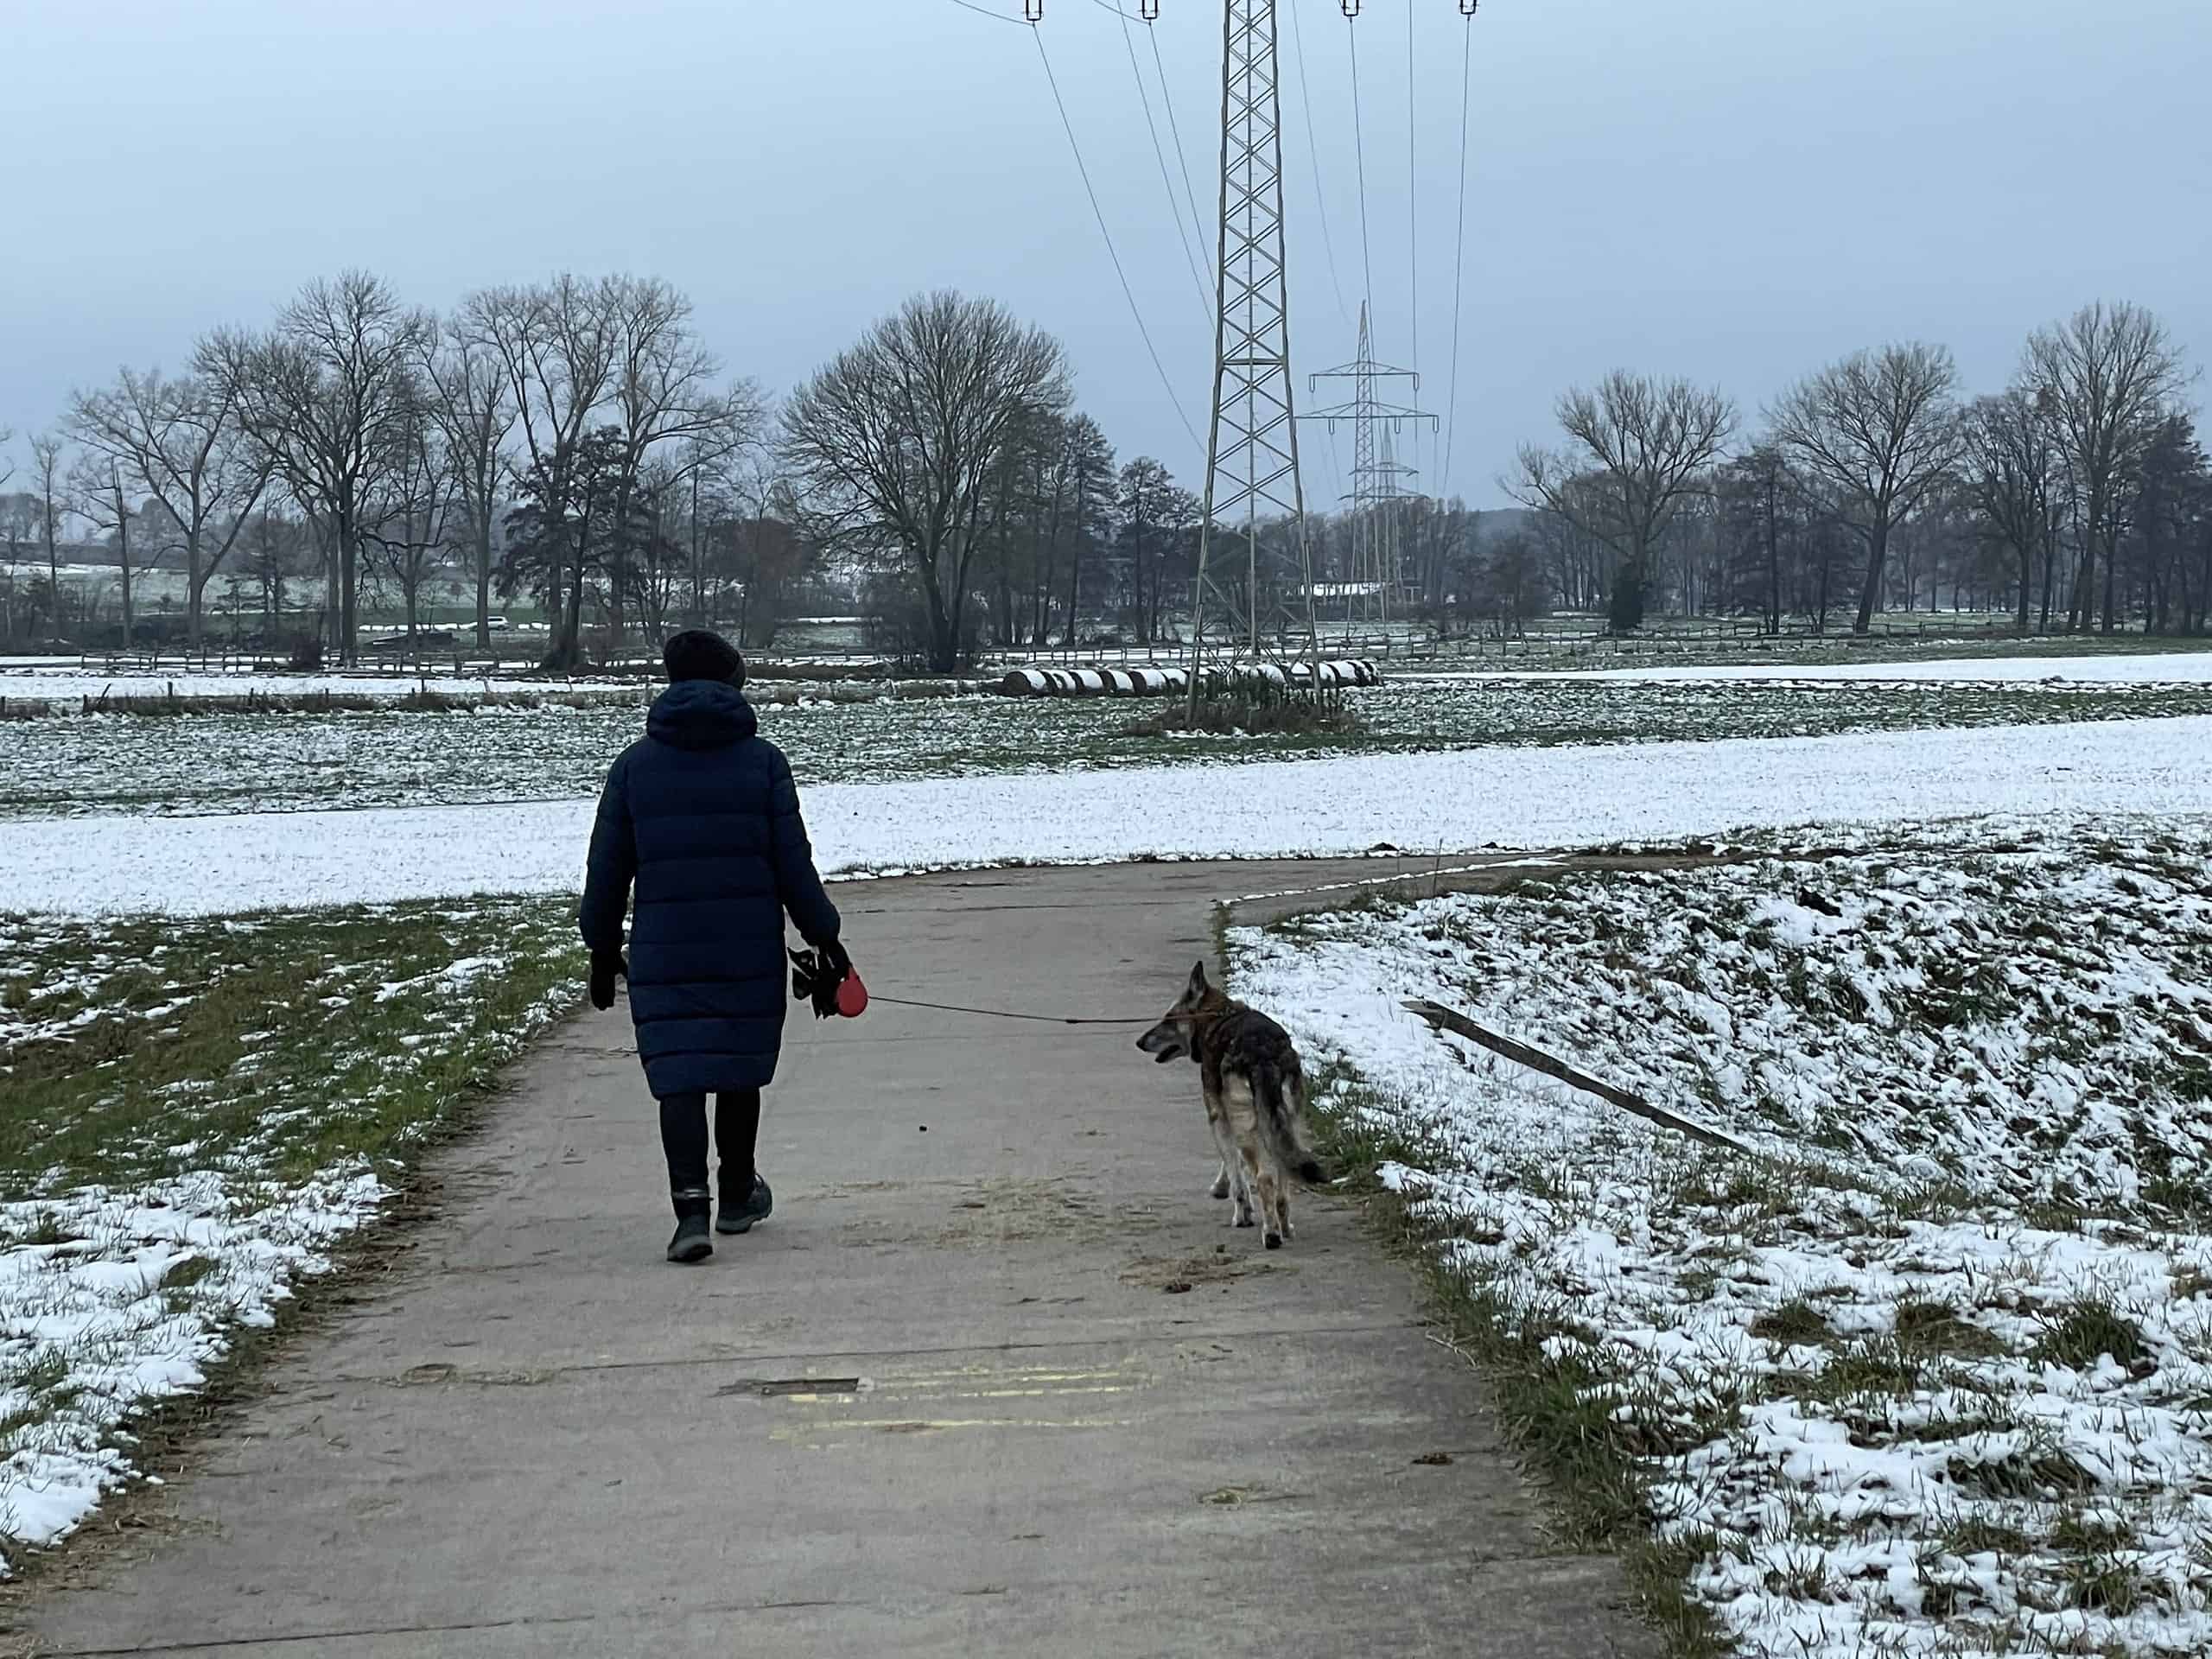 Soazierend mit Hund am obigen Kanal in Winterlandschaft.